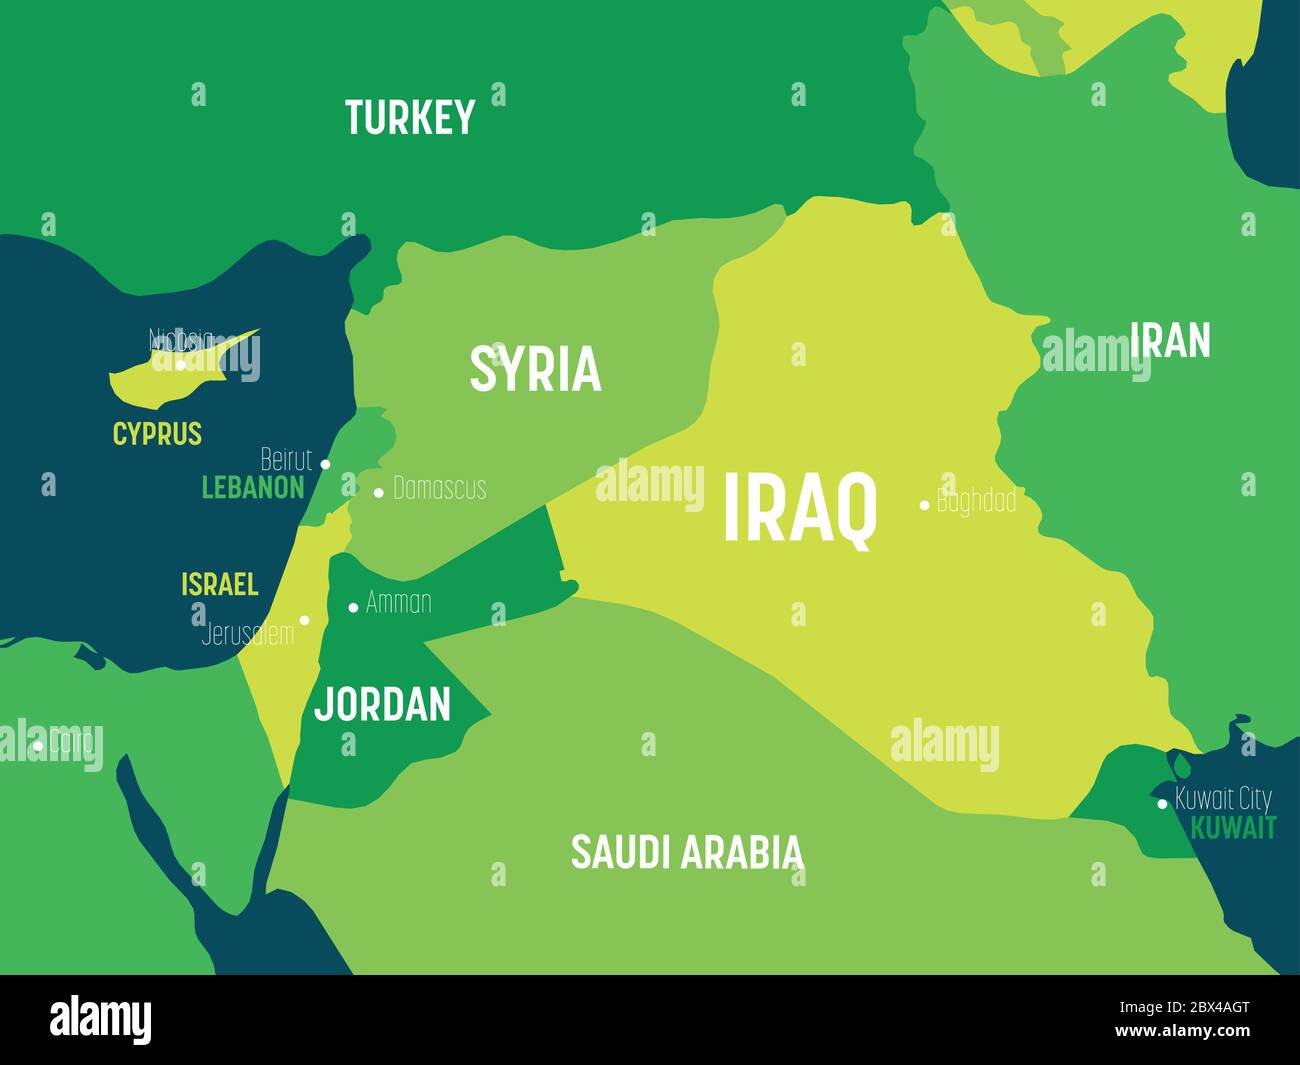 Mappa del Medio Oriente - colore verde su sfondo scuro. Mappa politica dettagliata del Medio Oriente e della regione della Penisola arabica con l'etichettatura dei nomi di paesi, capitali, oceani e mari. Illustrazione Vettoriale